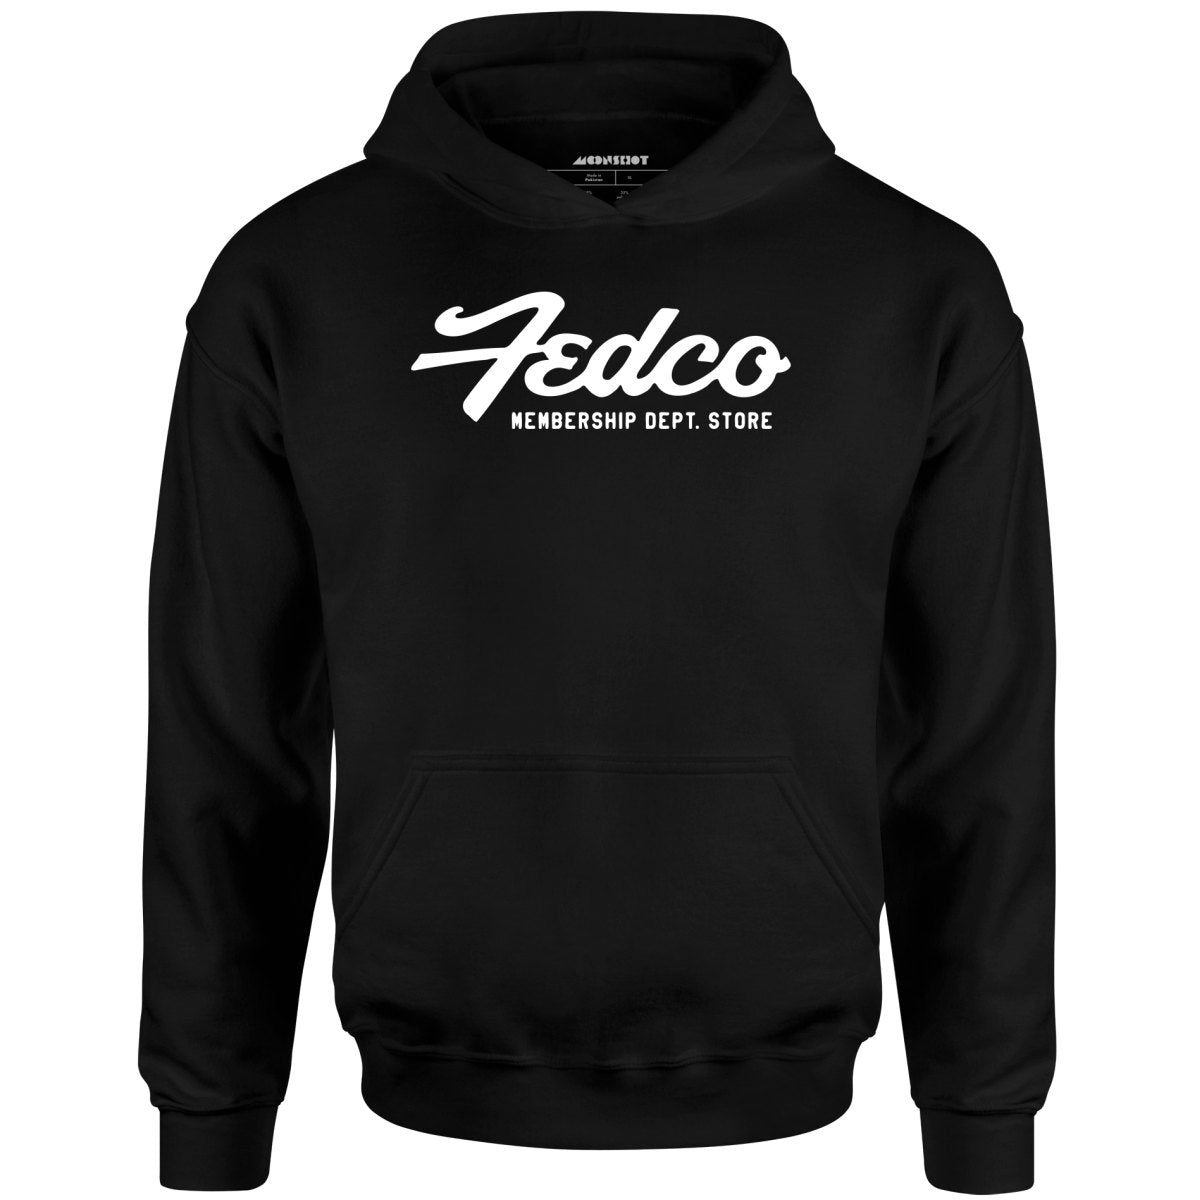 Fedco - Vintage Department Store - Unisex Hoodie